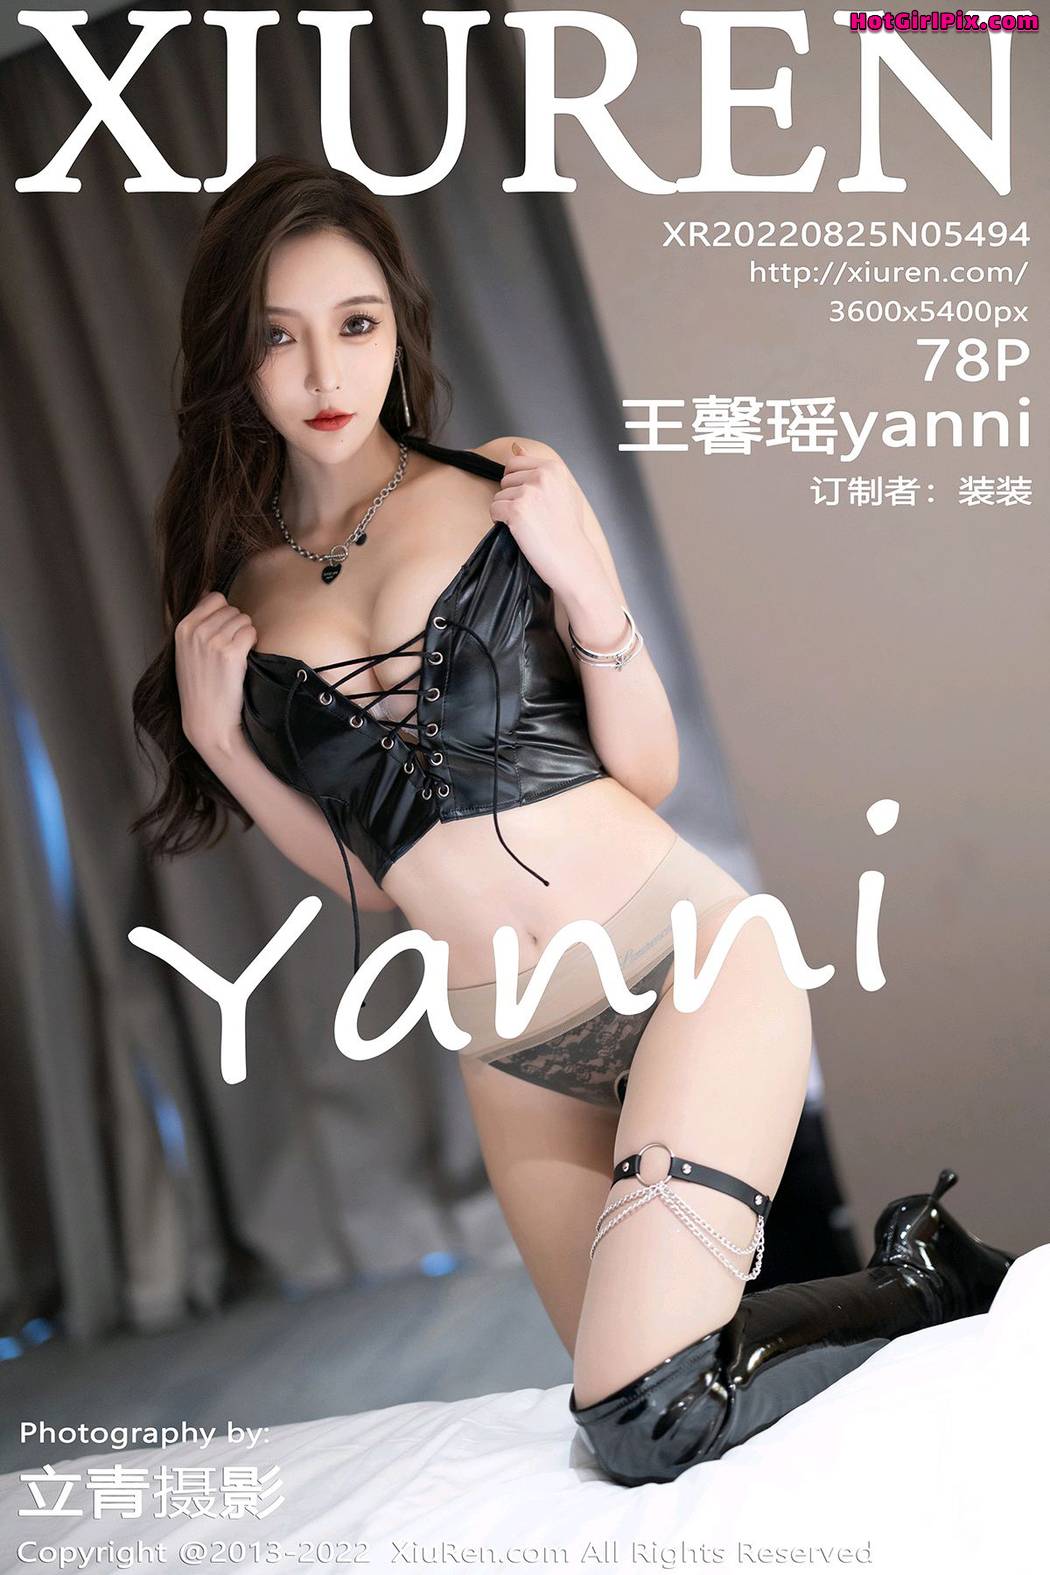 [XIUREN] No.5494 Wang Xin Yao 王馨瑶yanni Cover Photo